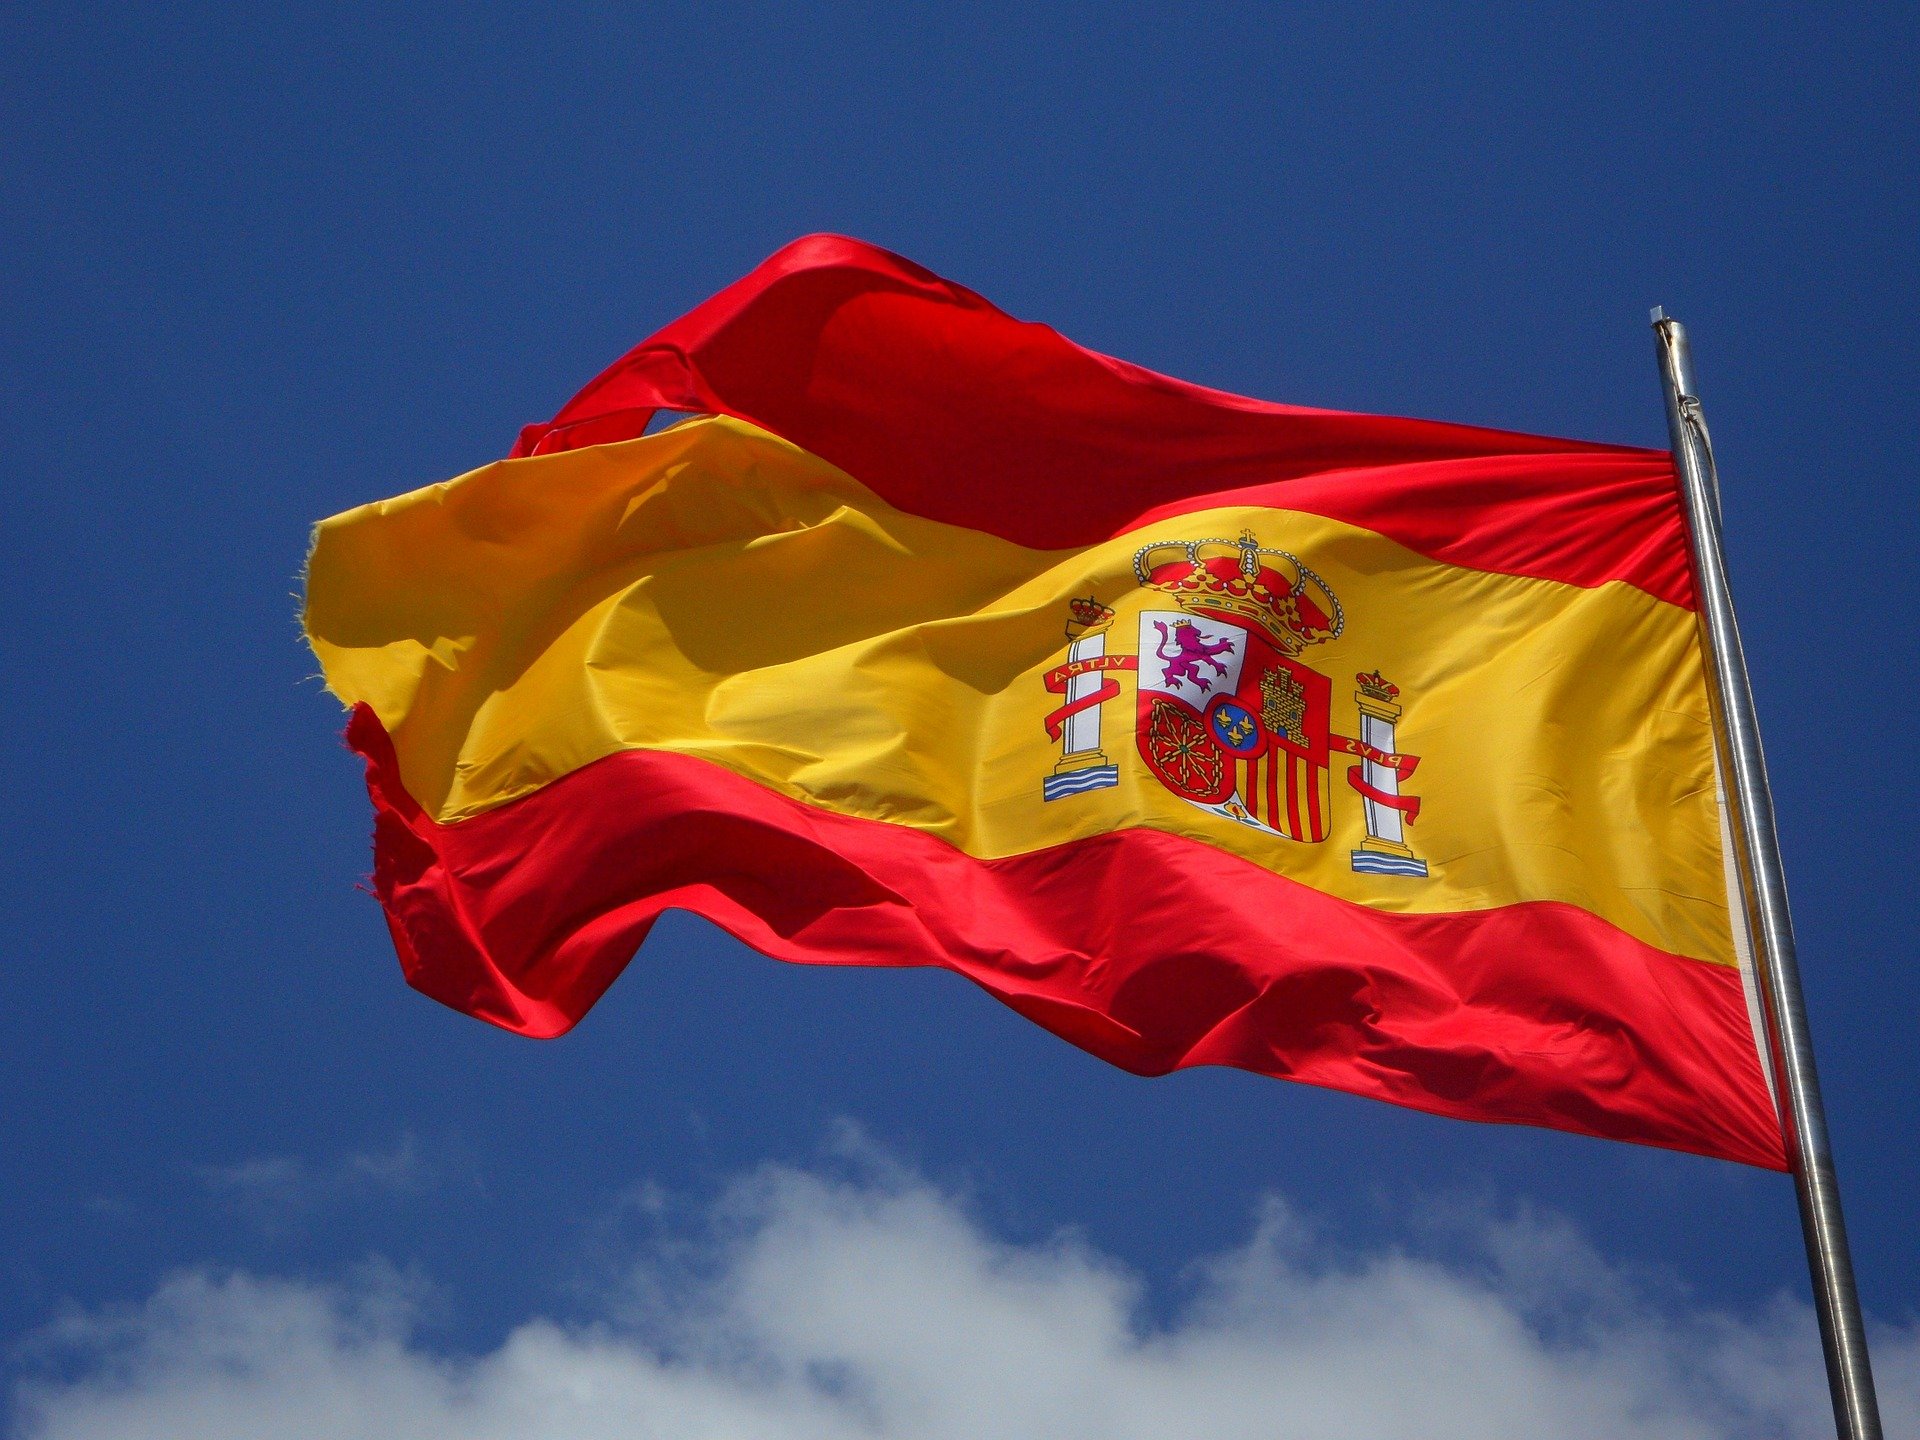 רישיון מגורים ועבודה בספרד למי שקיבל אזרחות אירופאית